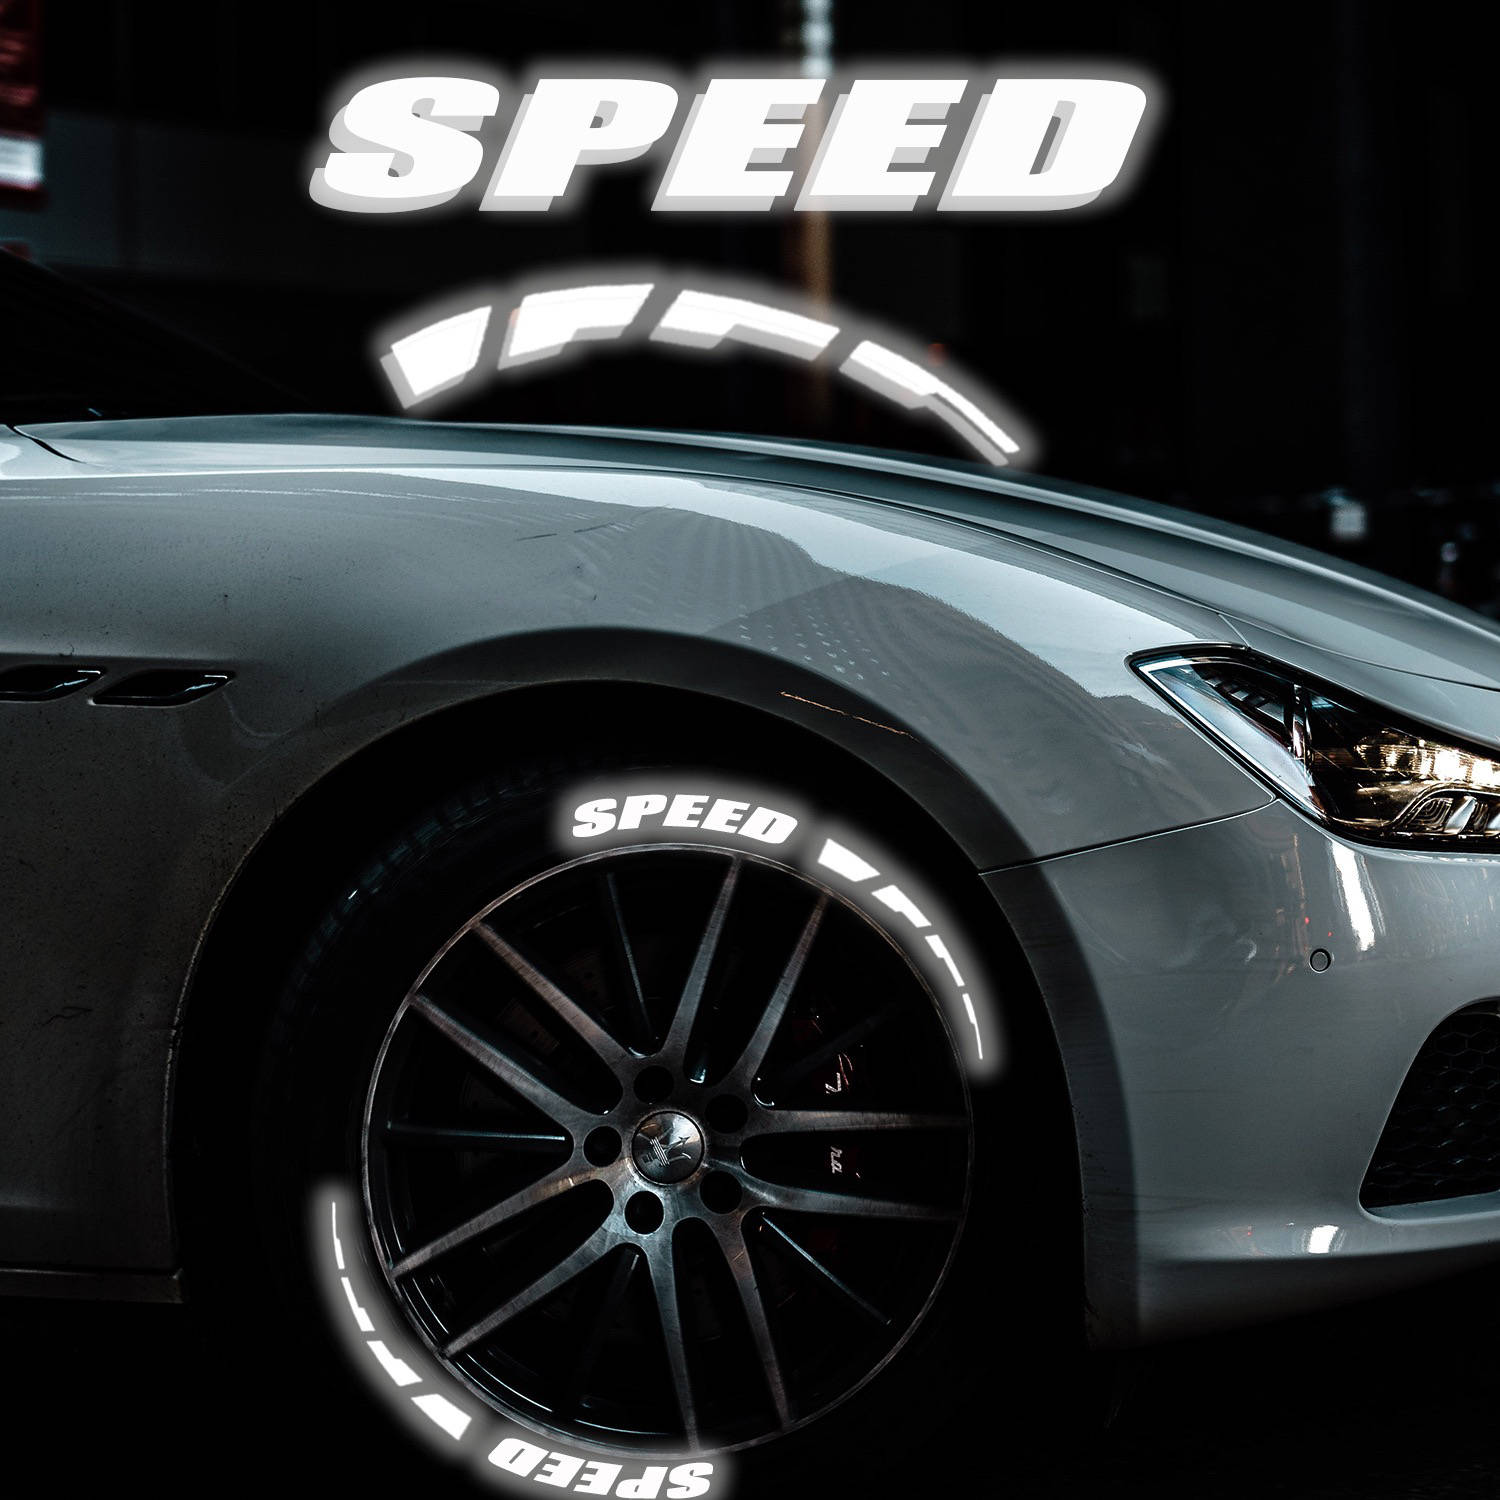 Decoração Refletiva para pneus com a palavra speed para colar na roda do carro para personalizar o automóvel em estilo desportivo